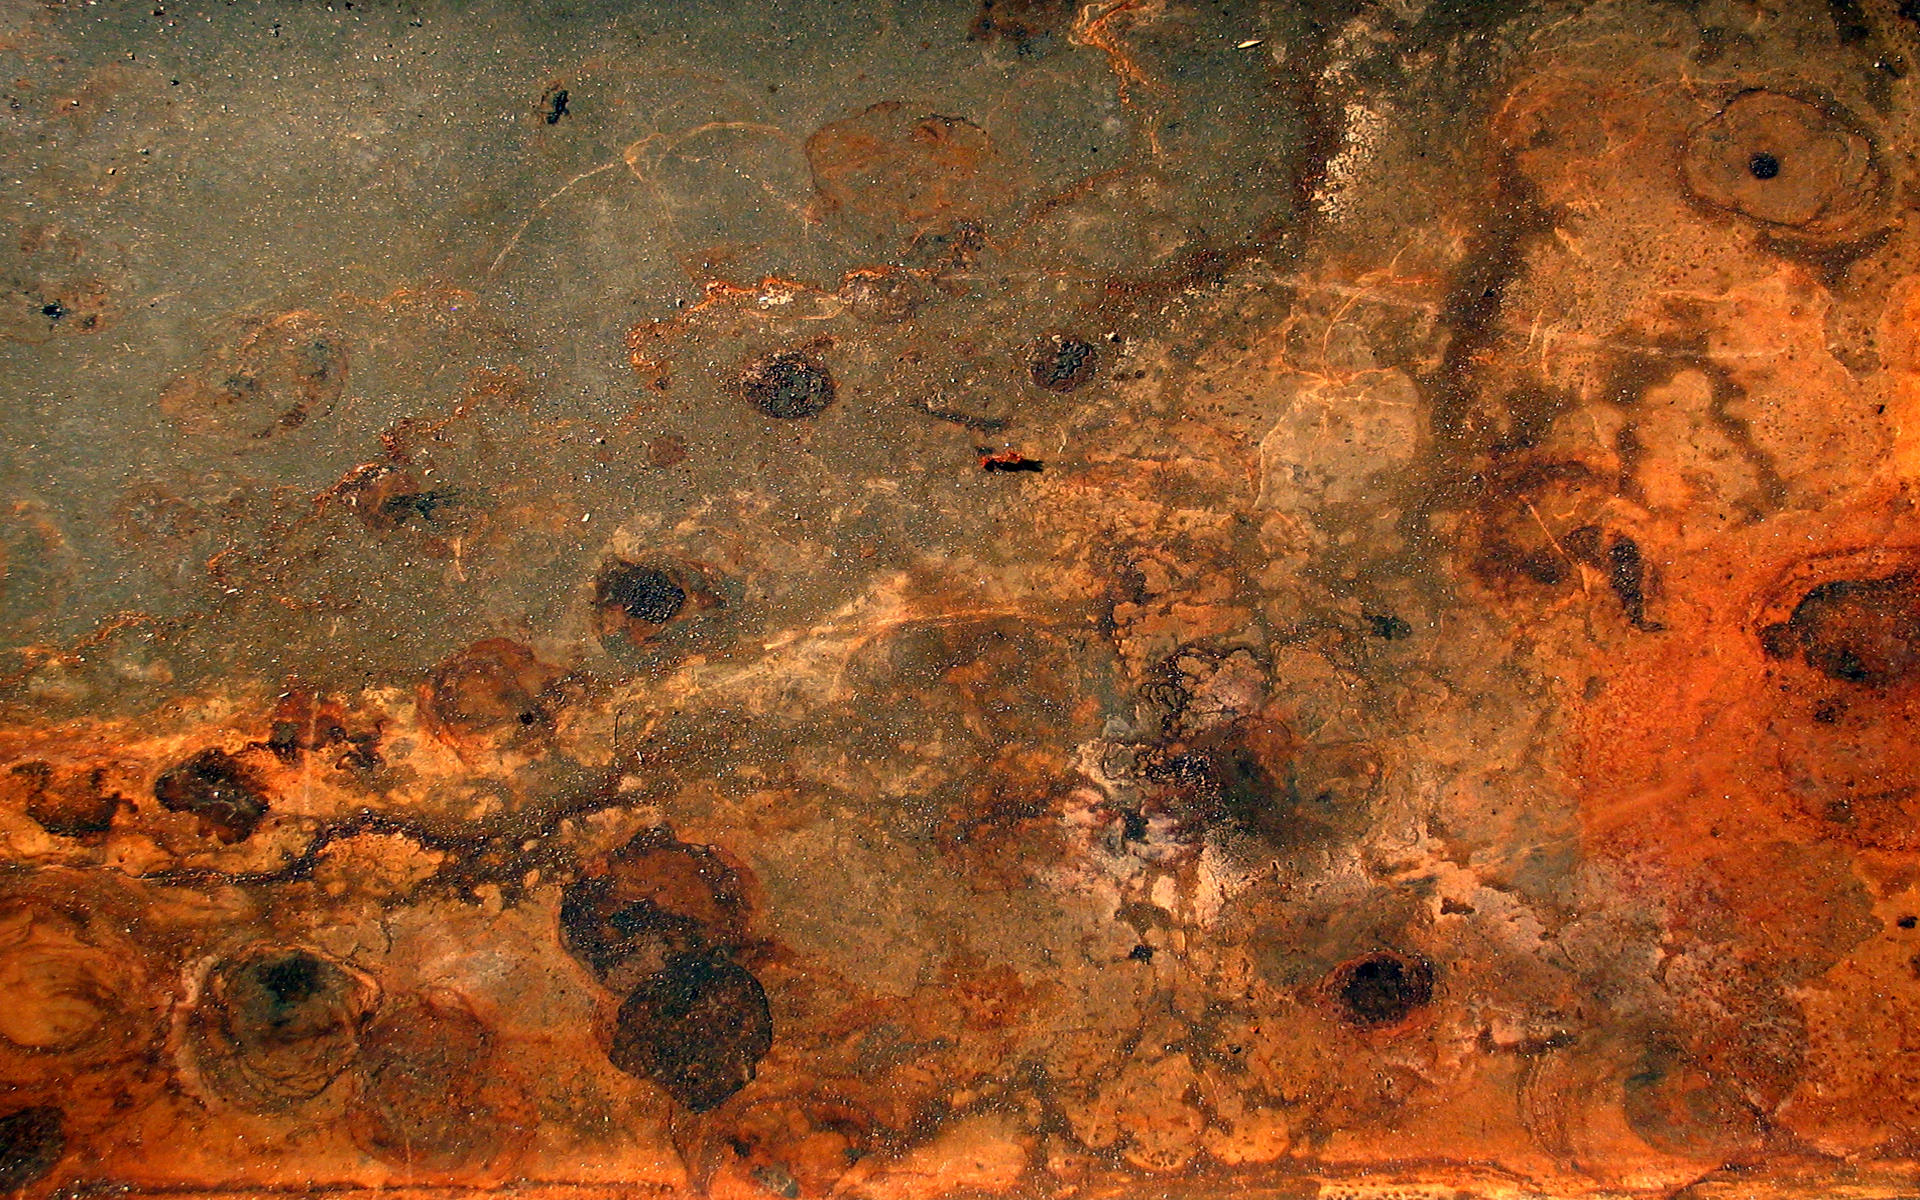 Ржавчина текстура, фон железо ржавое, скачать фото ржа железы